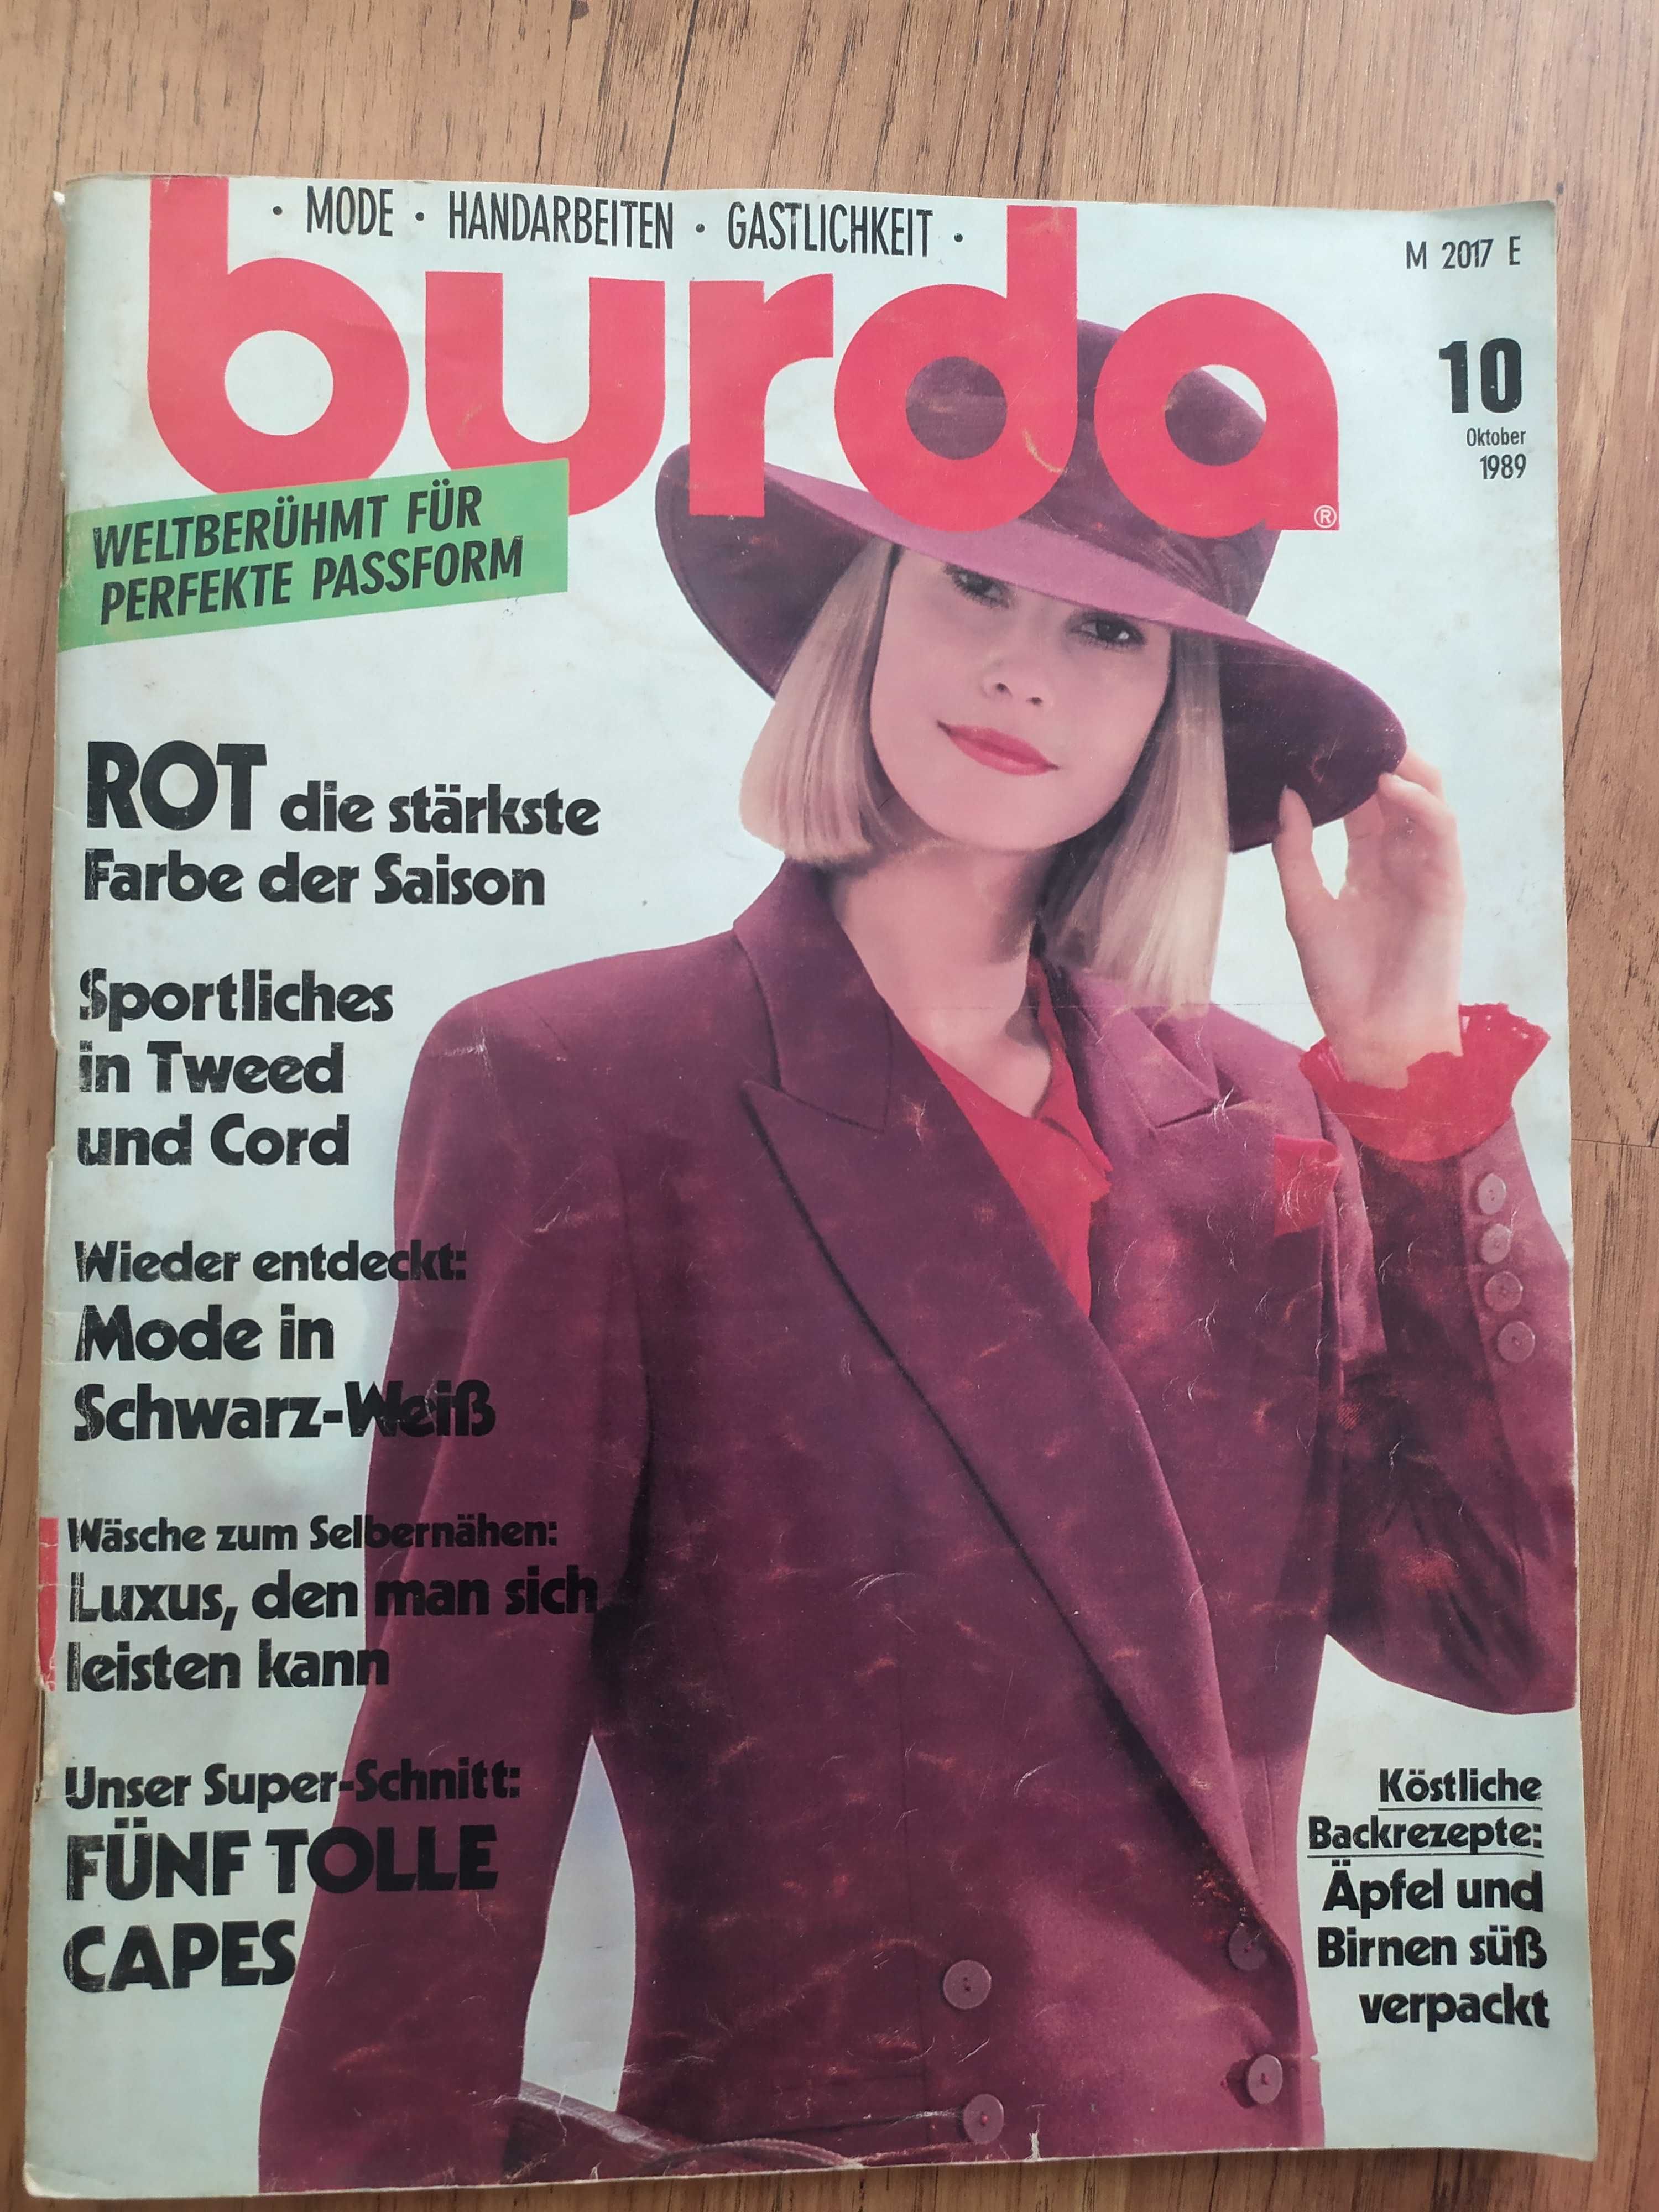 Списание Бурда Burda с кройки 10/1989 немско издание